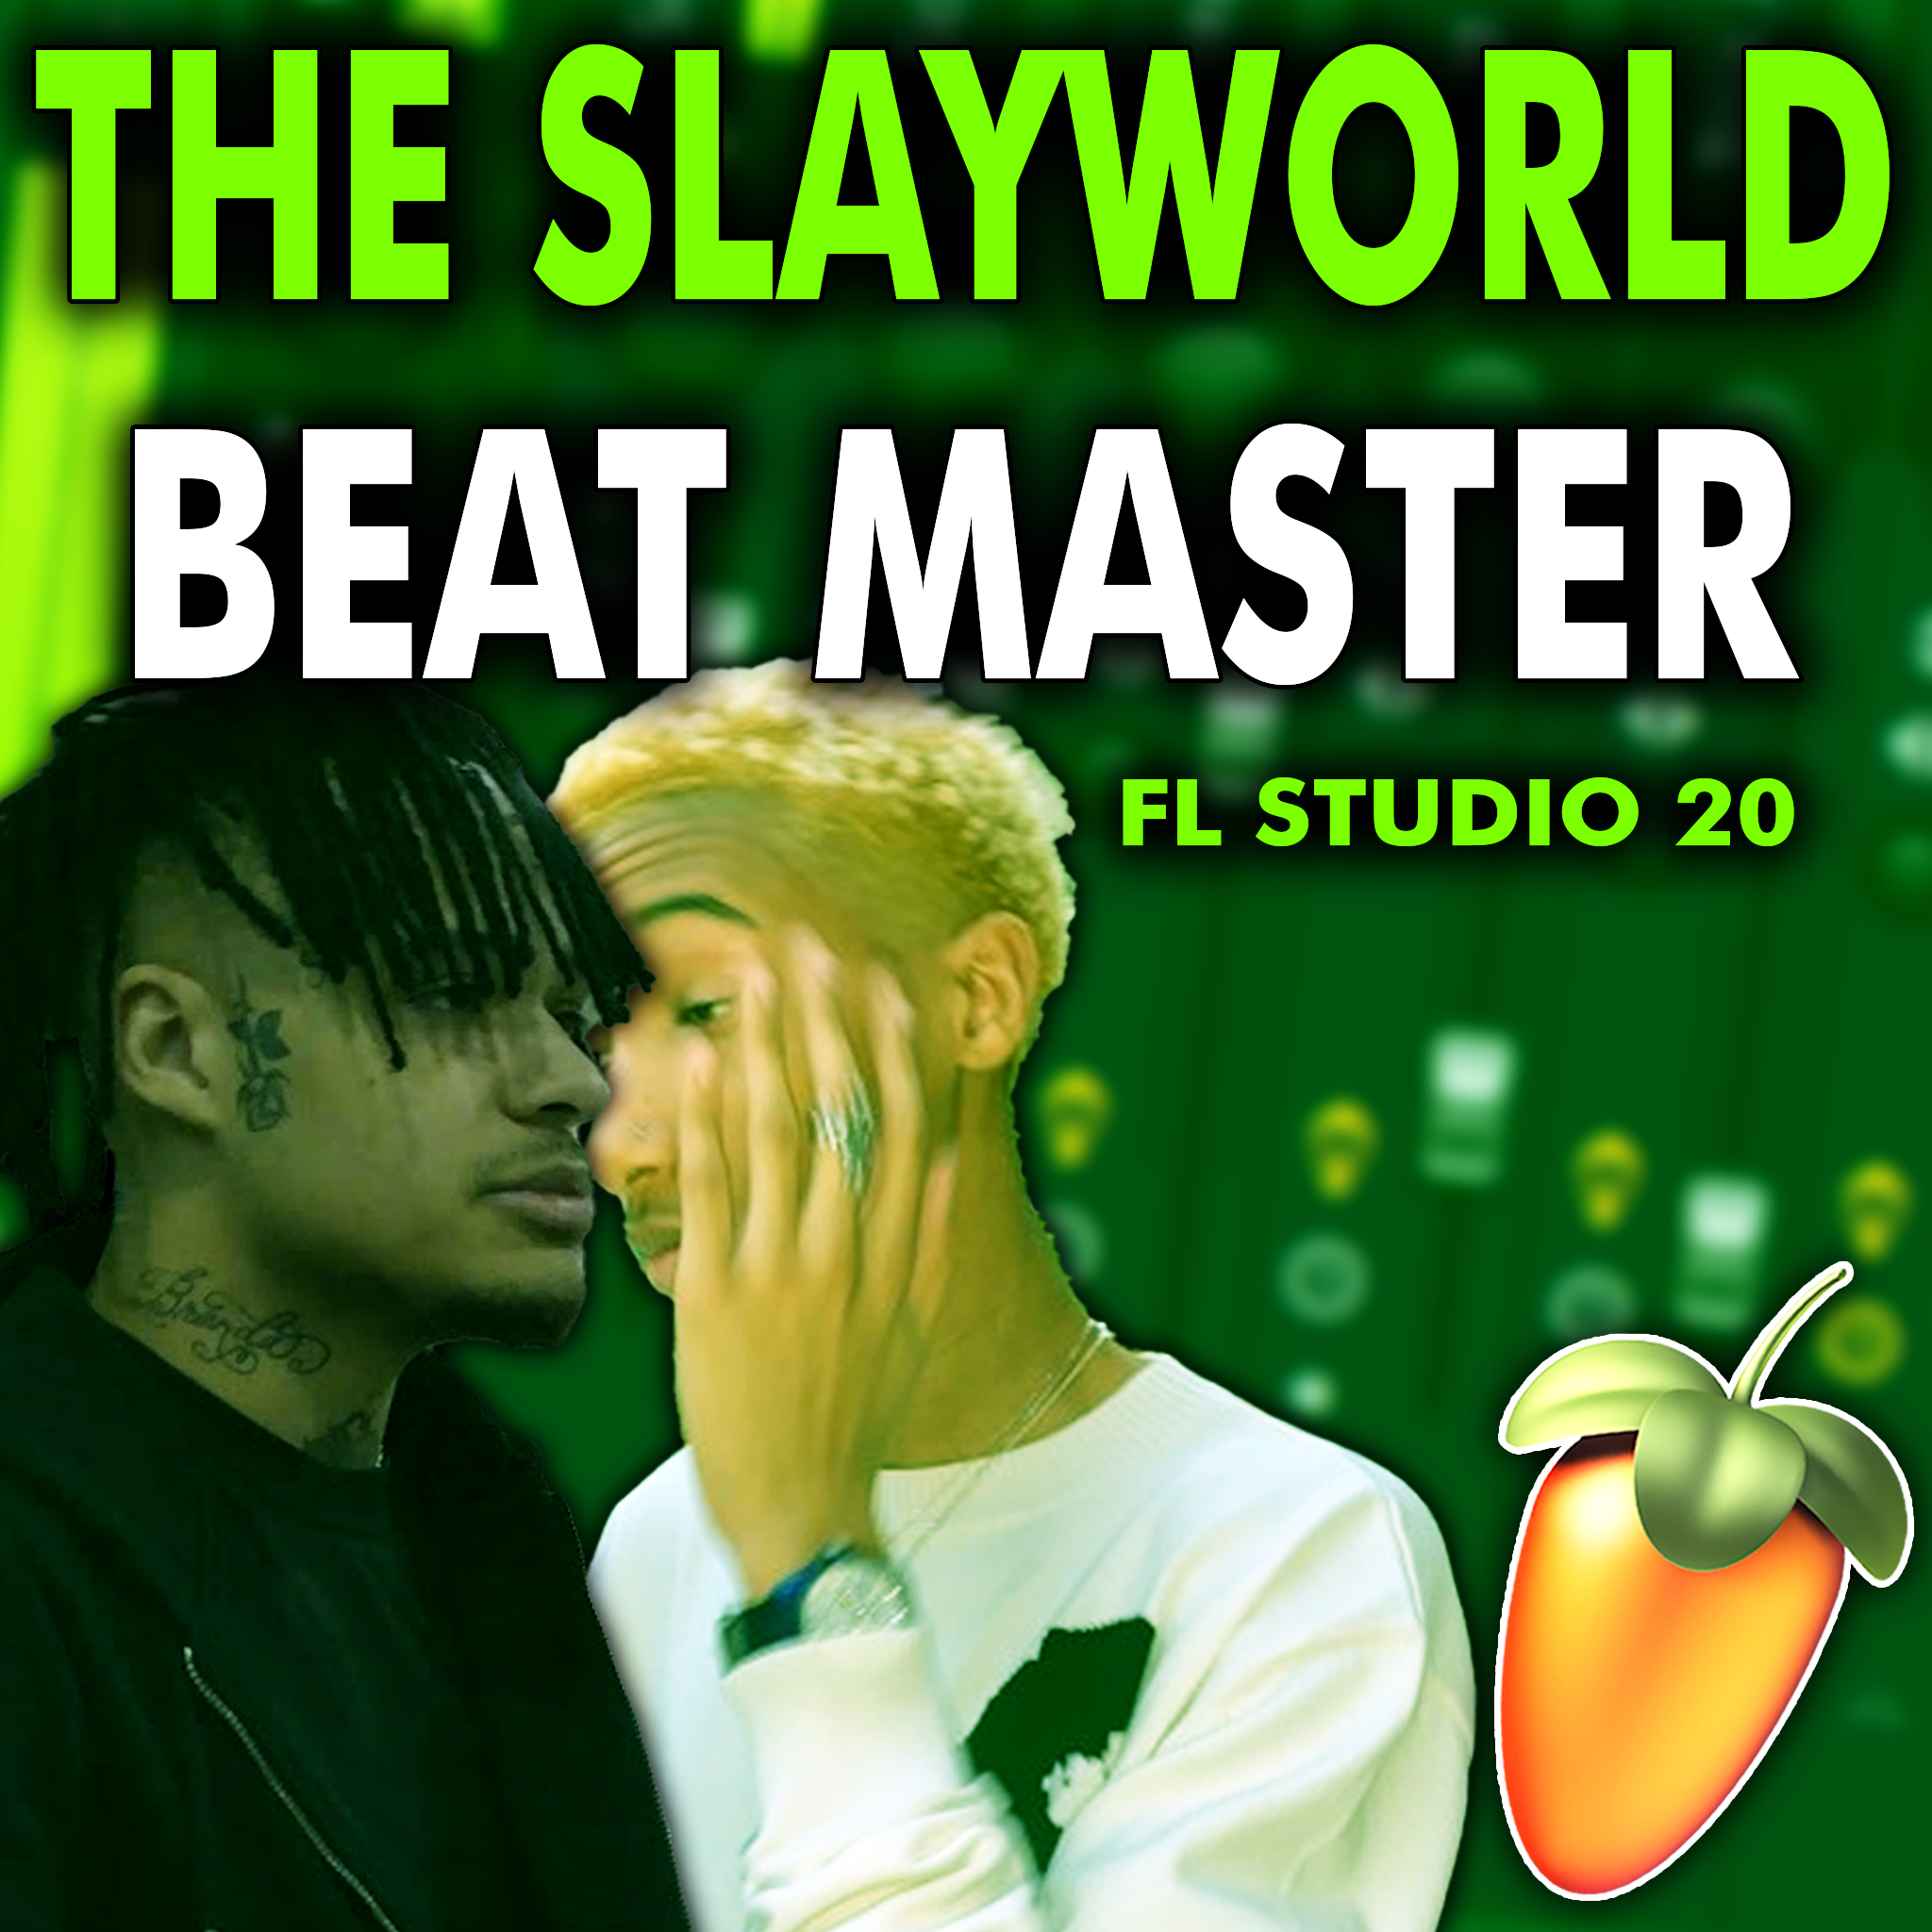 The Slayworld Beat Master